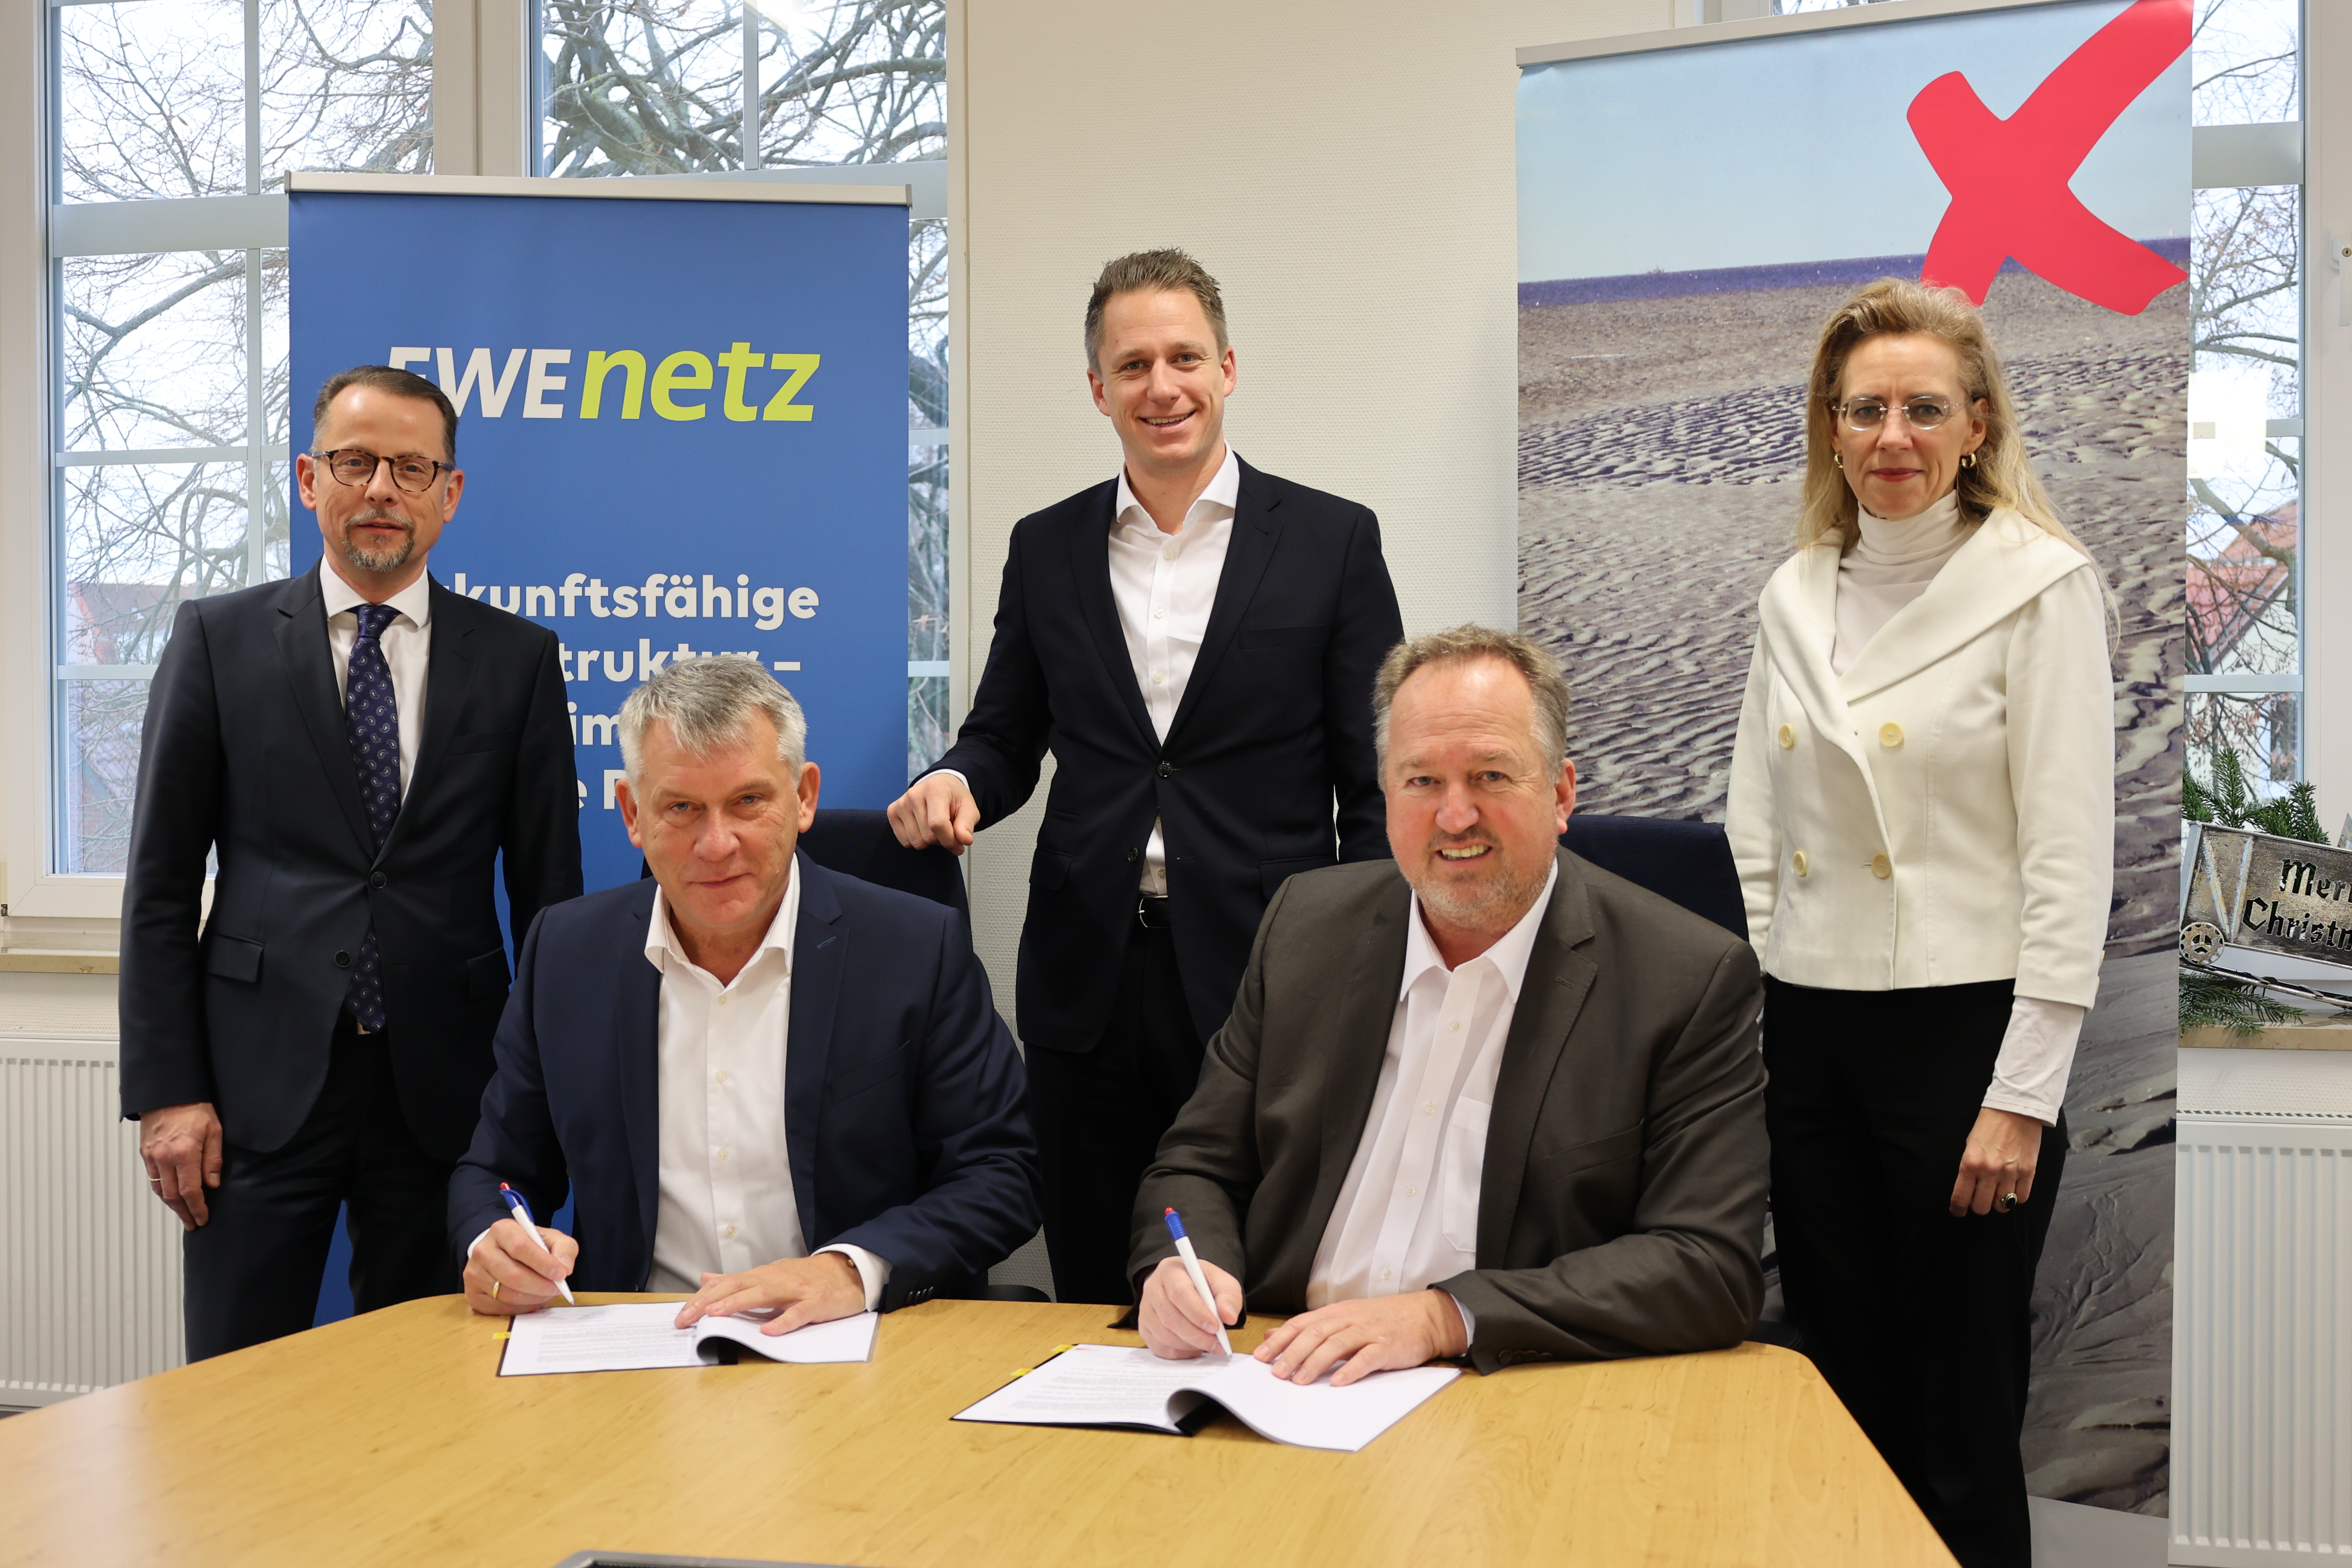 EWE NETZ und Stadt Cuxhaven schließen Vertrag zum Betrieb des Stromnetzes für die nächsten 20 Jahre